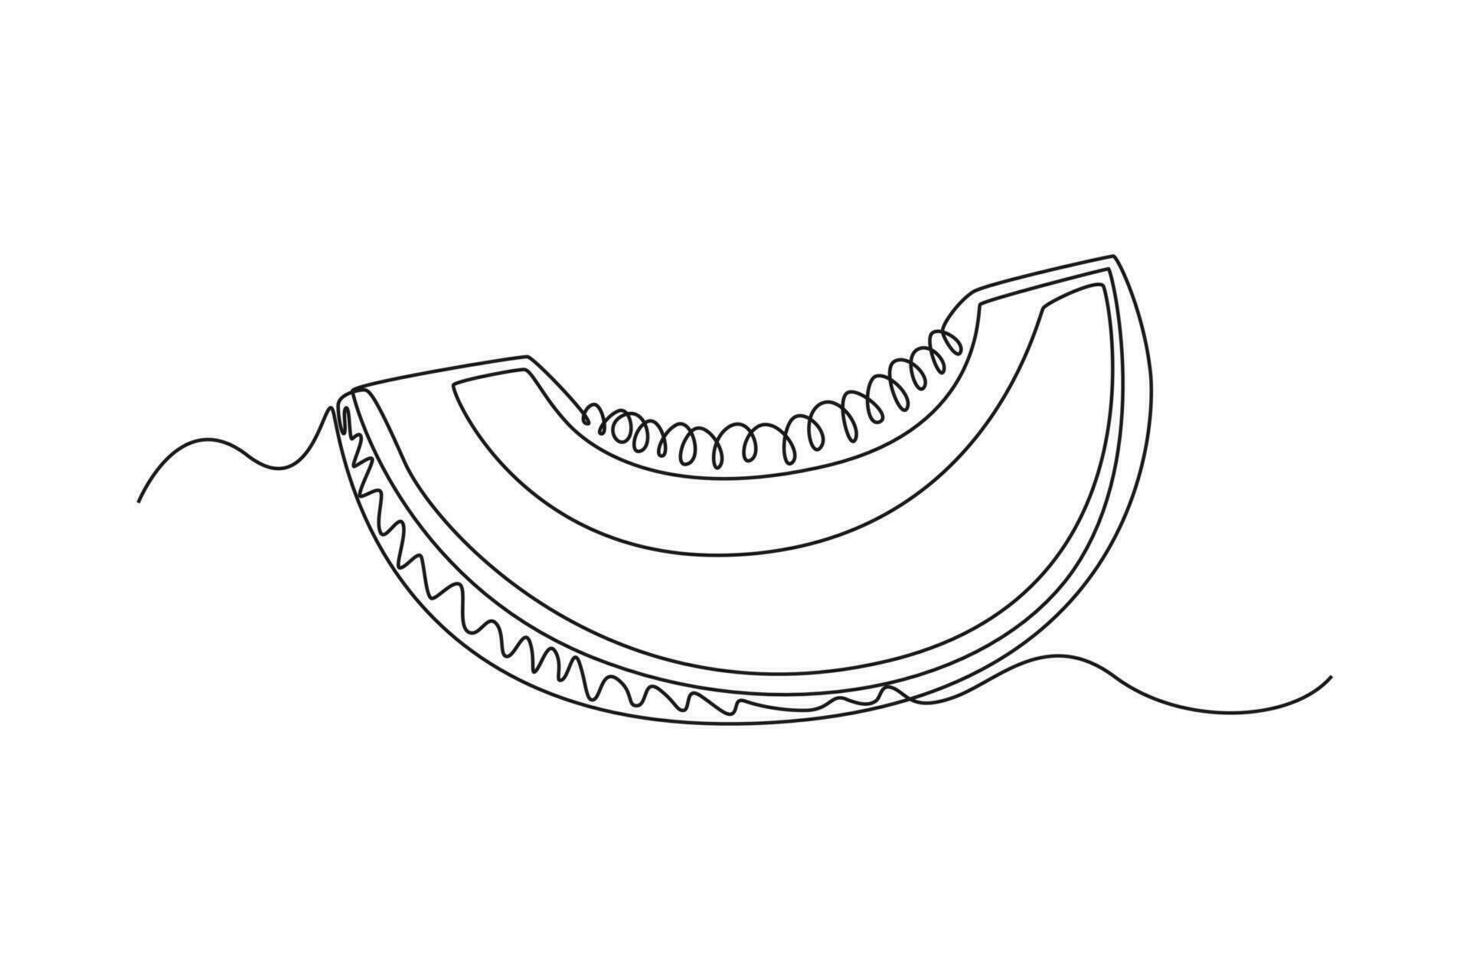 single een lijn tekening fruit concept. doorlopend lijn trek ontwerp grafisch vector illustratie.